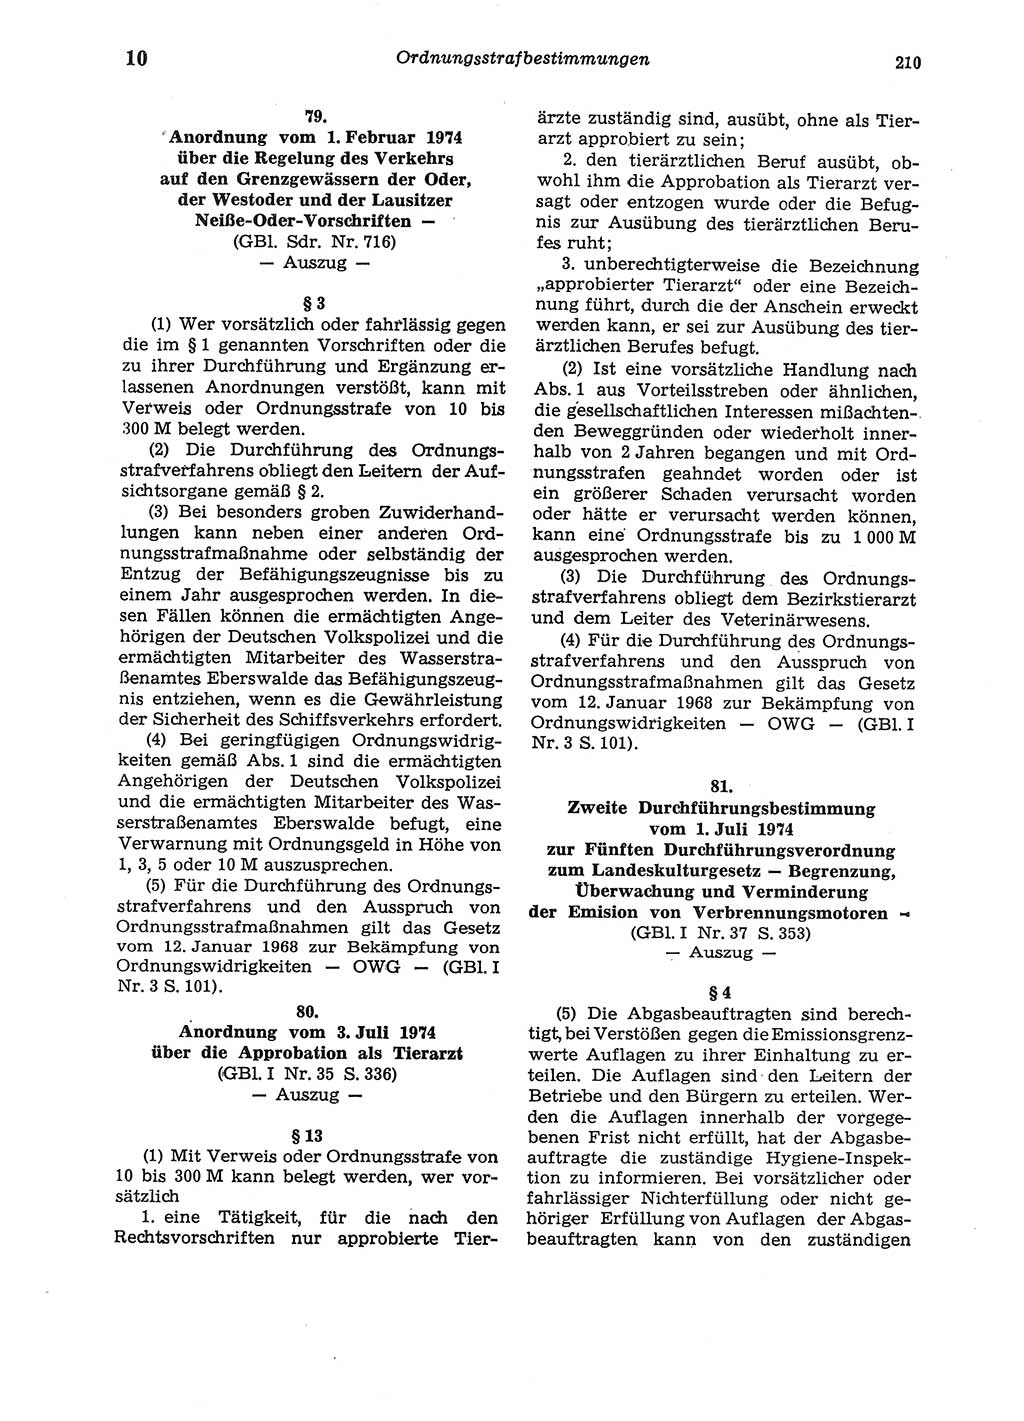 Strafgesetzbuch (StGB) der Deutschen Demokratischen Republik (DDR) und angrenzende Gesetze und Bestimmungen 1975, Seite 210 (StGB DDR Ges. Best. 1975, S. 210)